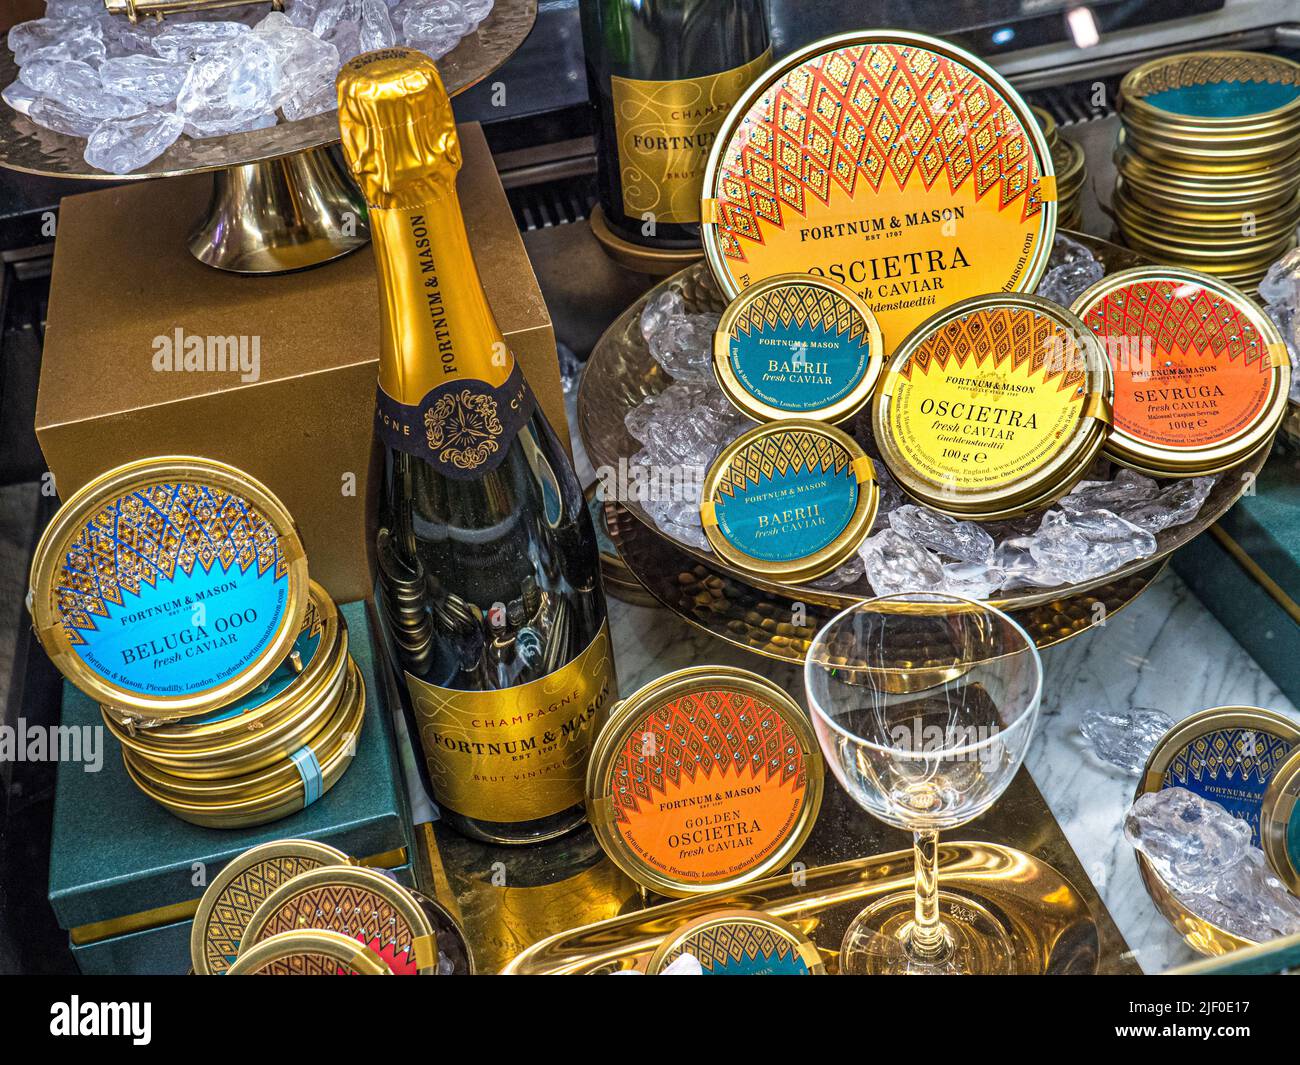 EXPOSITION DE CHAMPAGNE CAVIAR RUSSE EN VENTE Fortnum & Mason Food Hall avec exposition de l'armoire des variétés Caviar de marque Fortnum Beluga Oscietra Sevruga, Banque D'Images